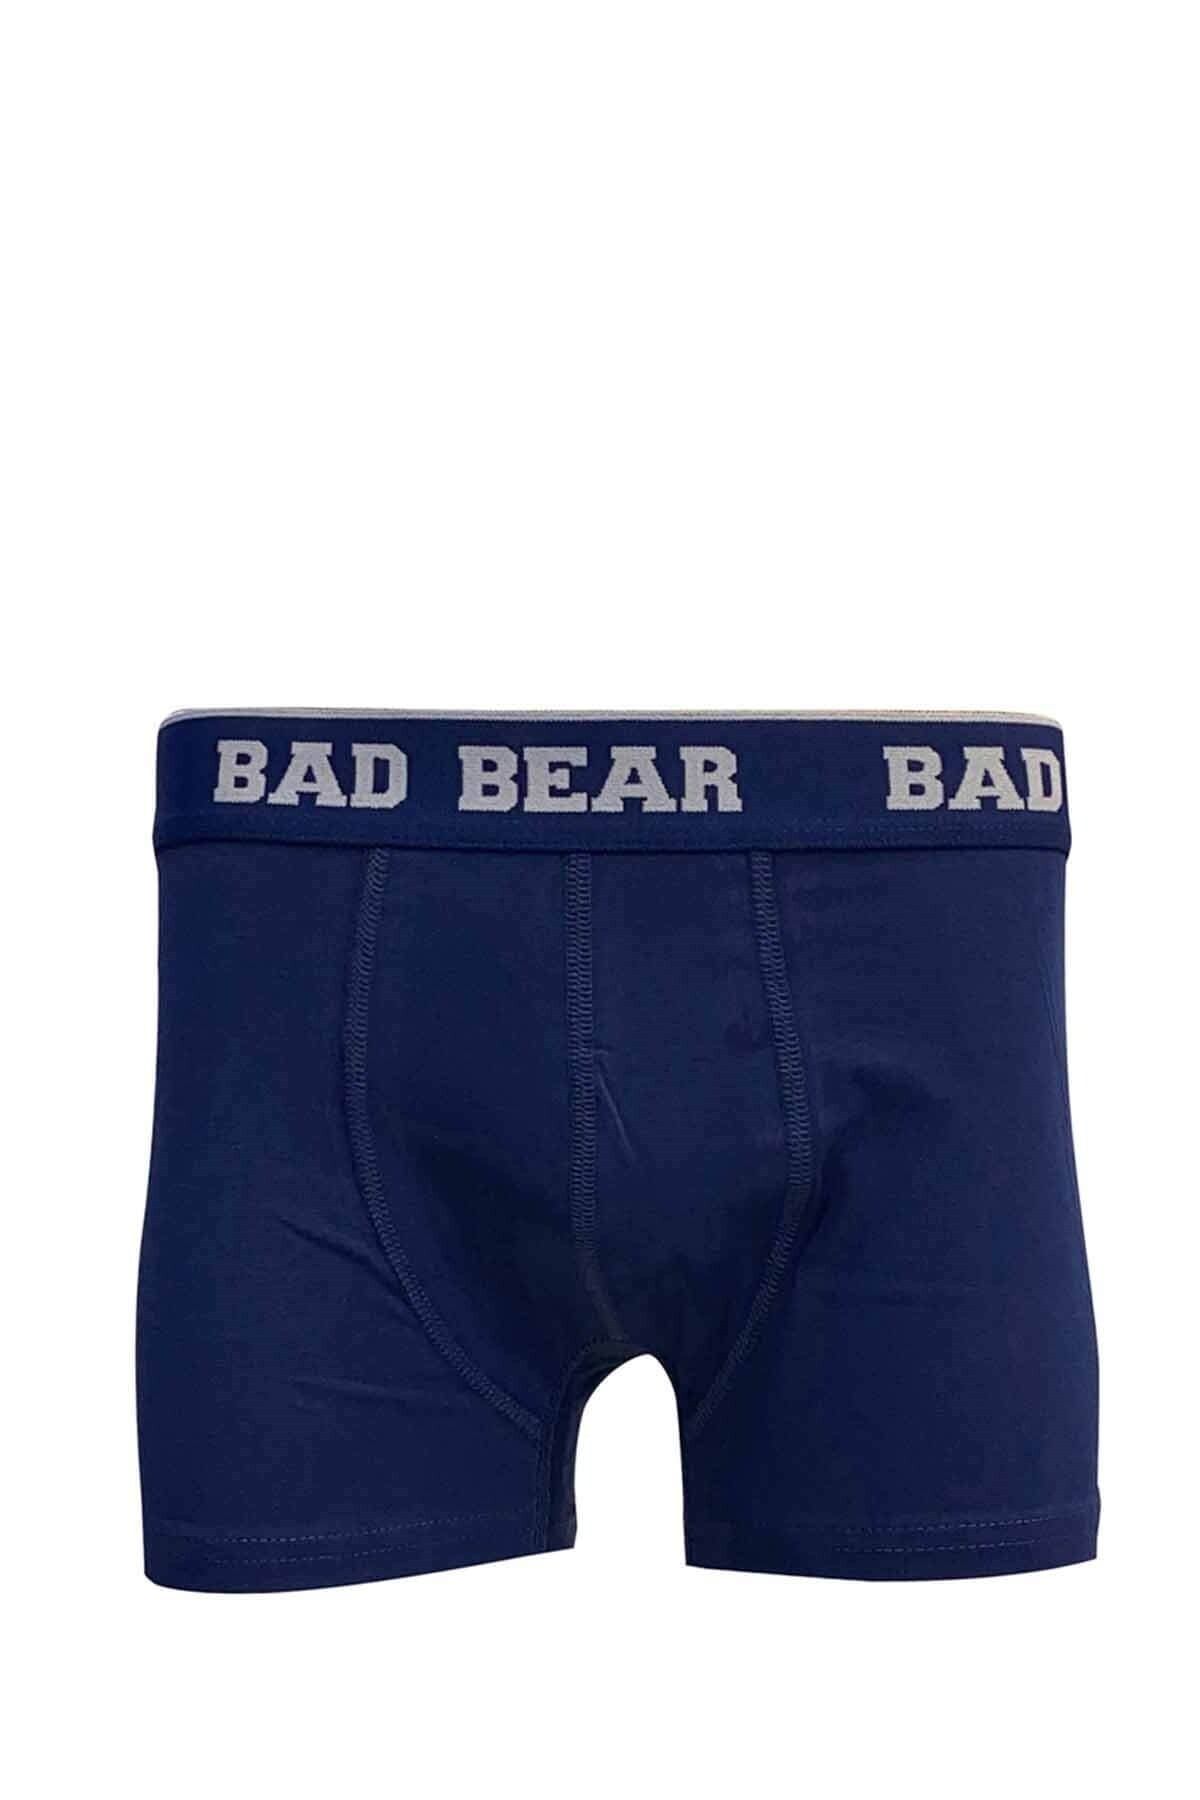 Bad Bear Basic Boxer Erkek Boxer 21.01.03.002navy